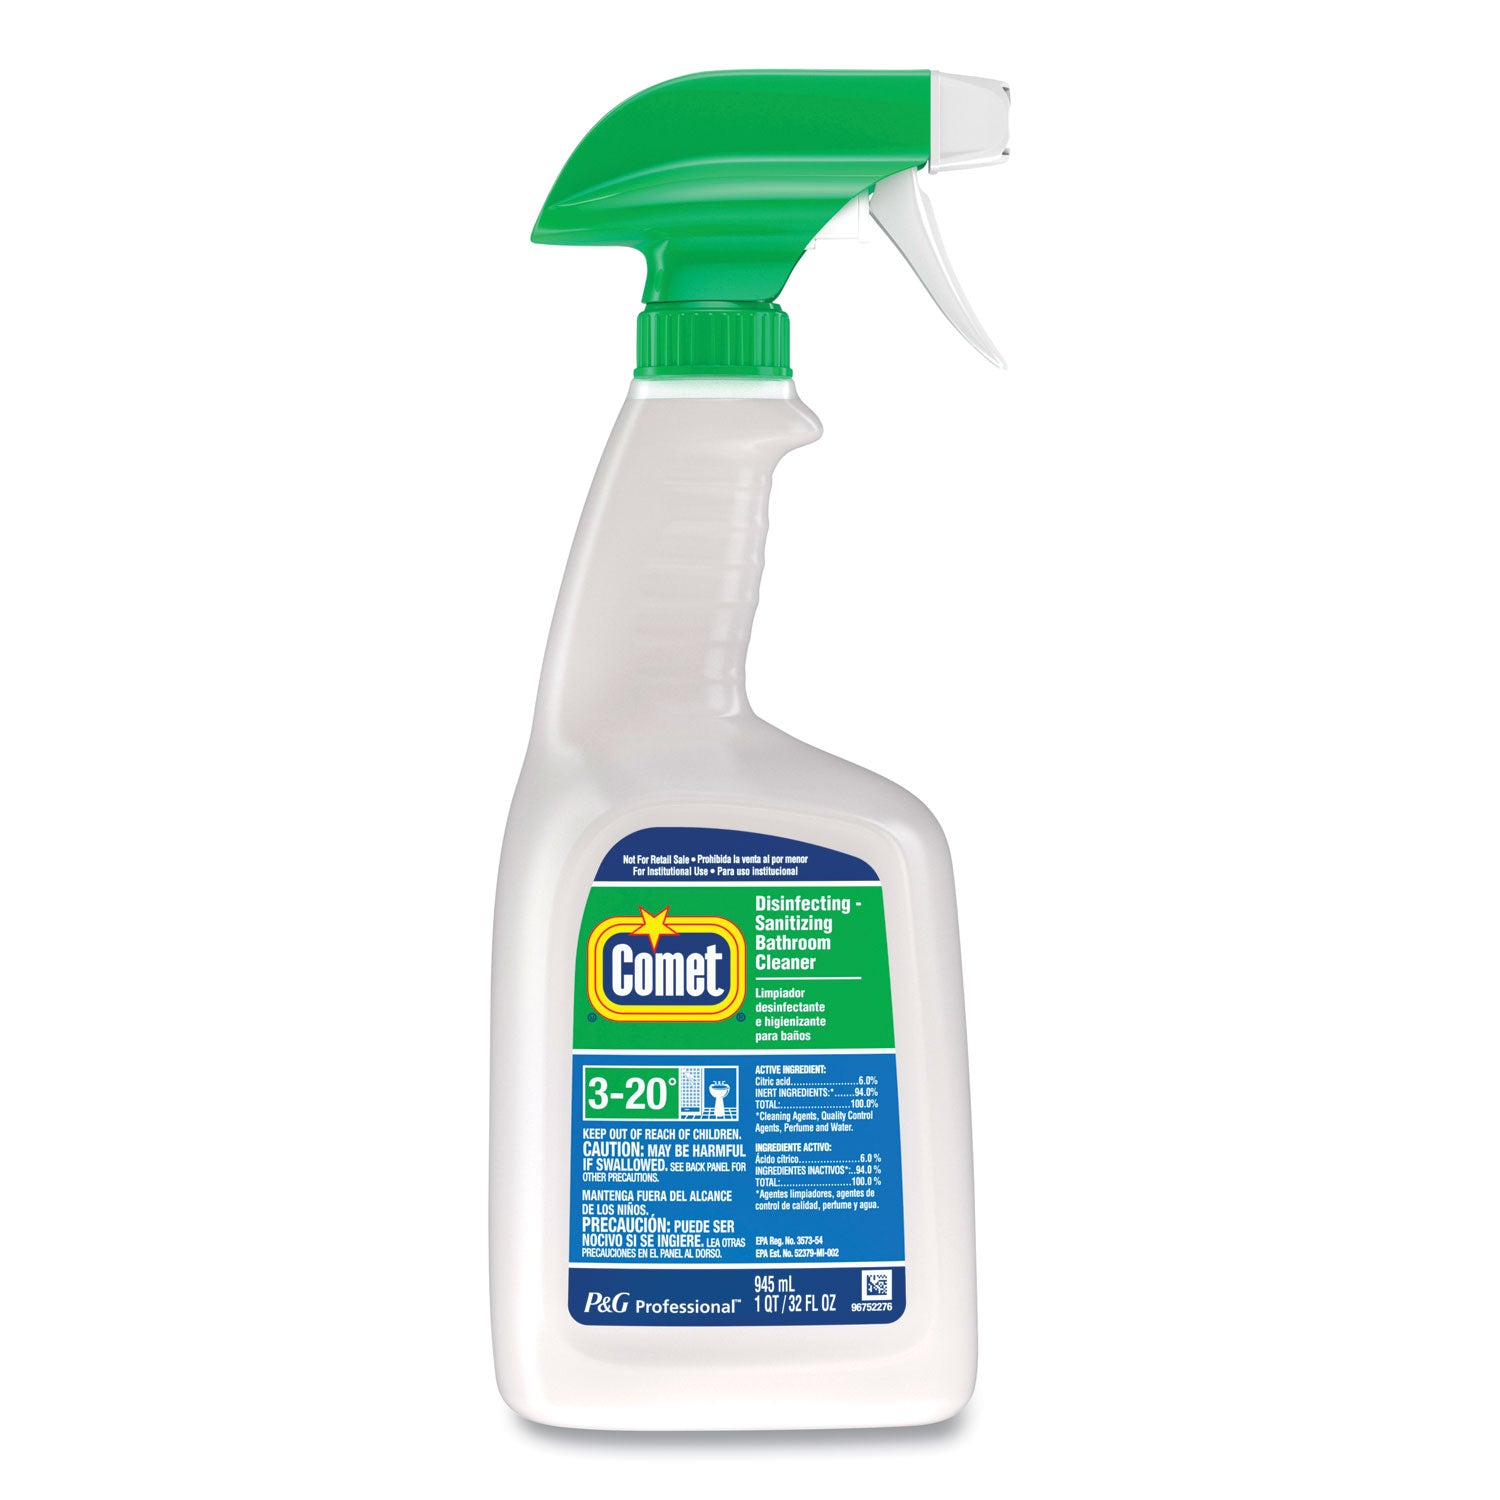 disinfecting-sanitizing-bathroom-cleaner-32-oz-trigger-spray-bottle_pgc19214ea - 1